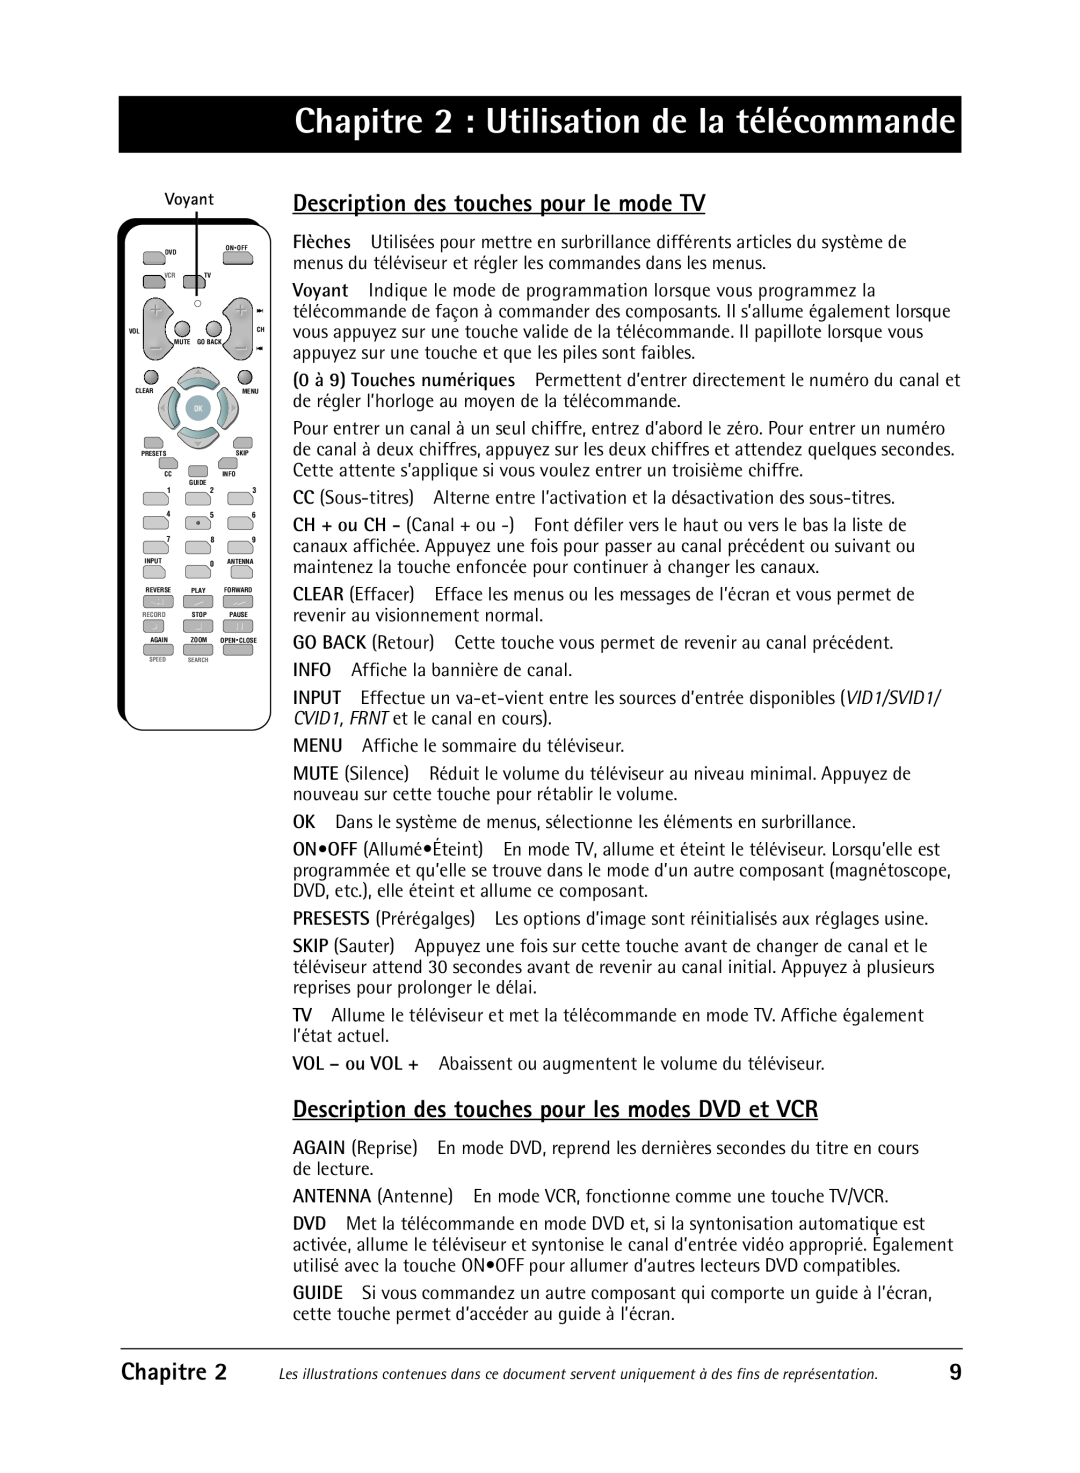 RCA 36V430T manual Chapitre 2 Utilisation de la télécommande, Description des touches pour le mode TV 